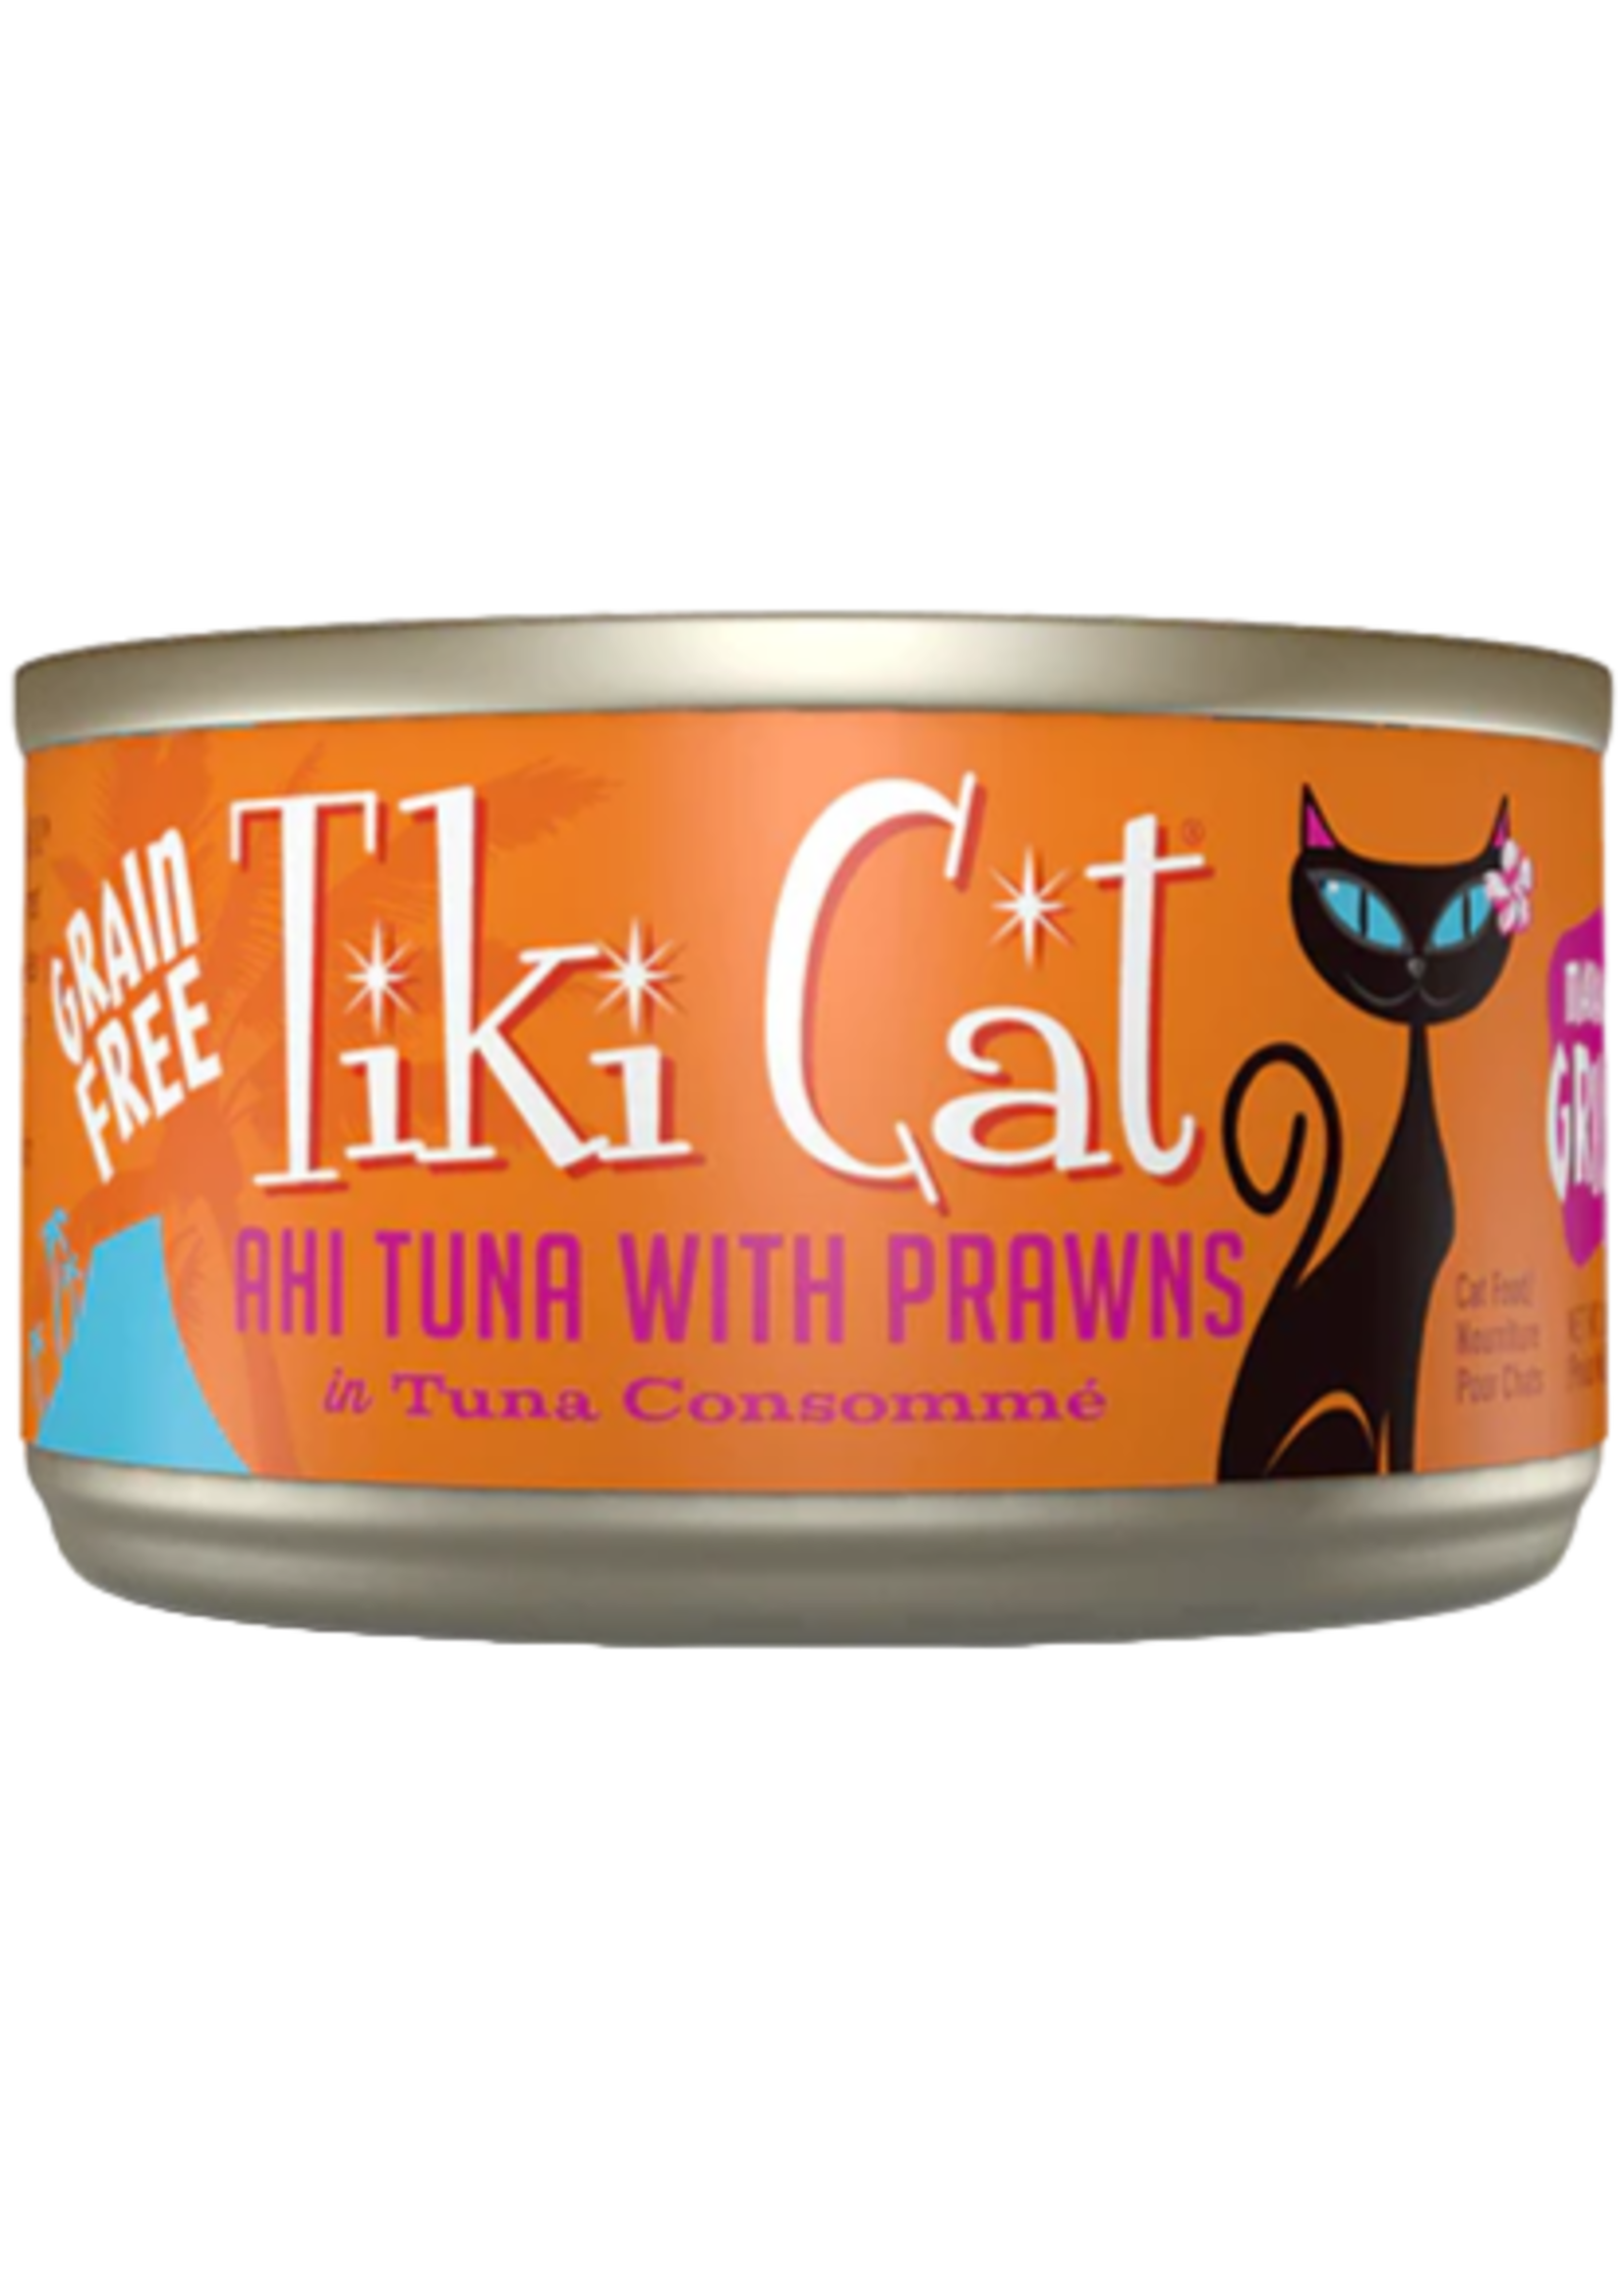 Tiki Cat Tiki Cat, Ahi Tuna & Prawns 6z